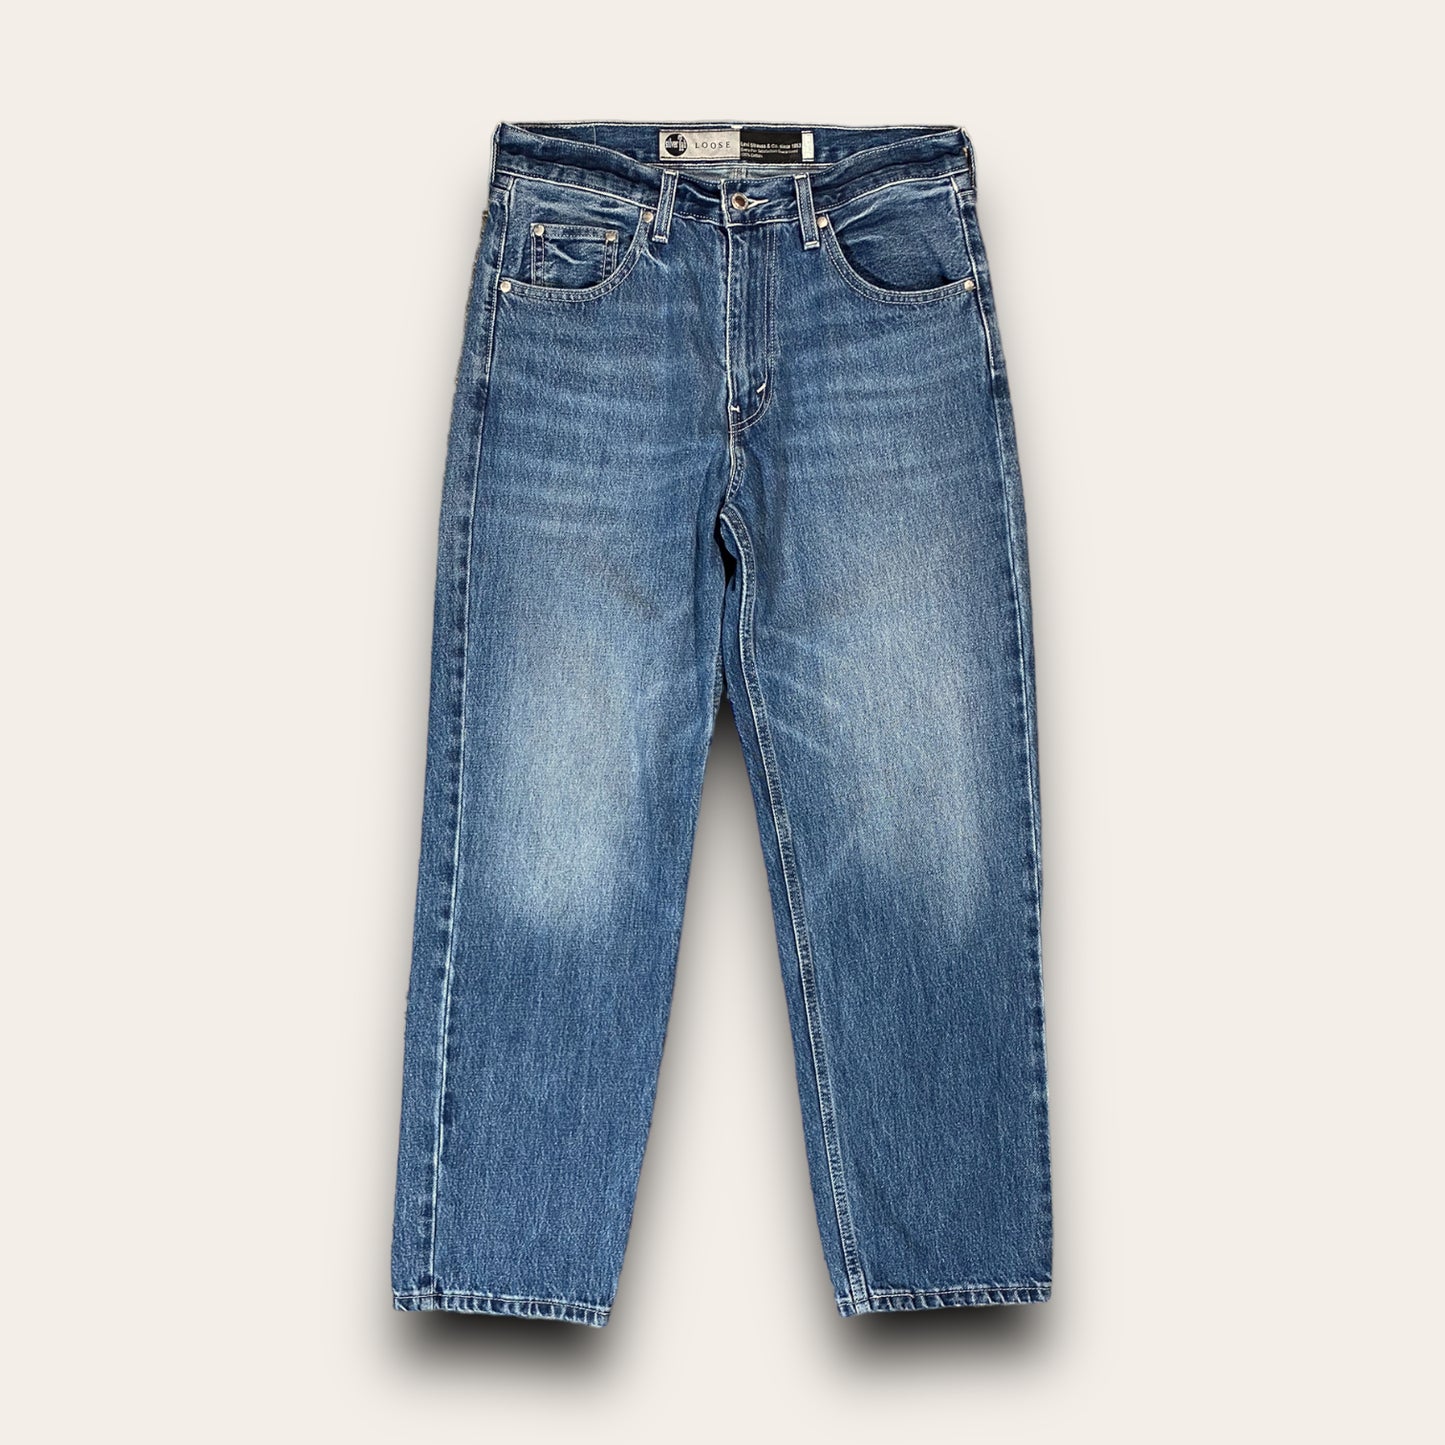 Levi’s Silver Tab Denim Jeans 30x30